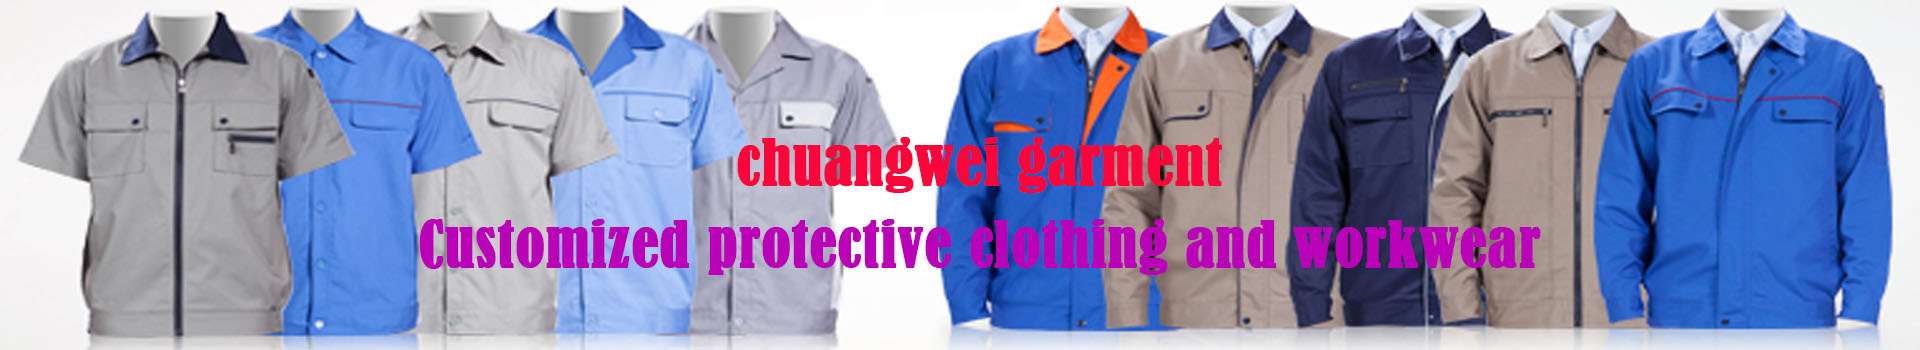 Xinxiang Tower workwear co. LTD